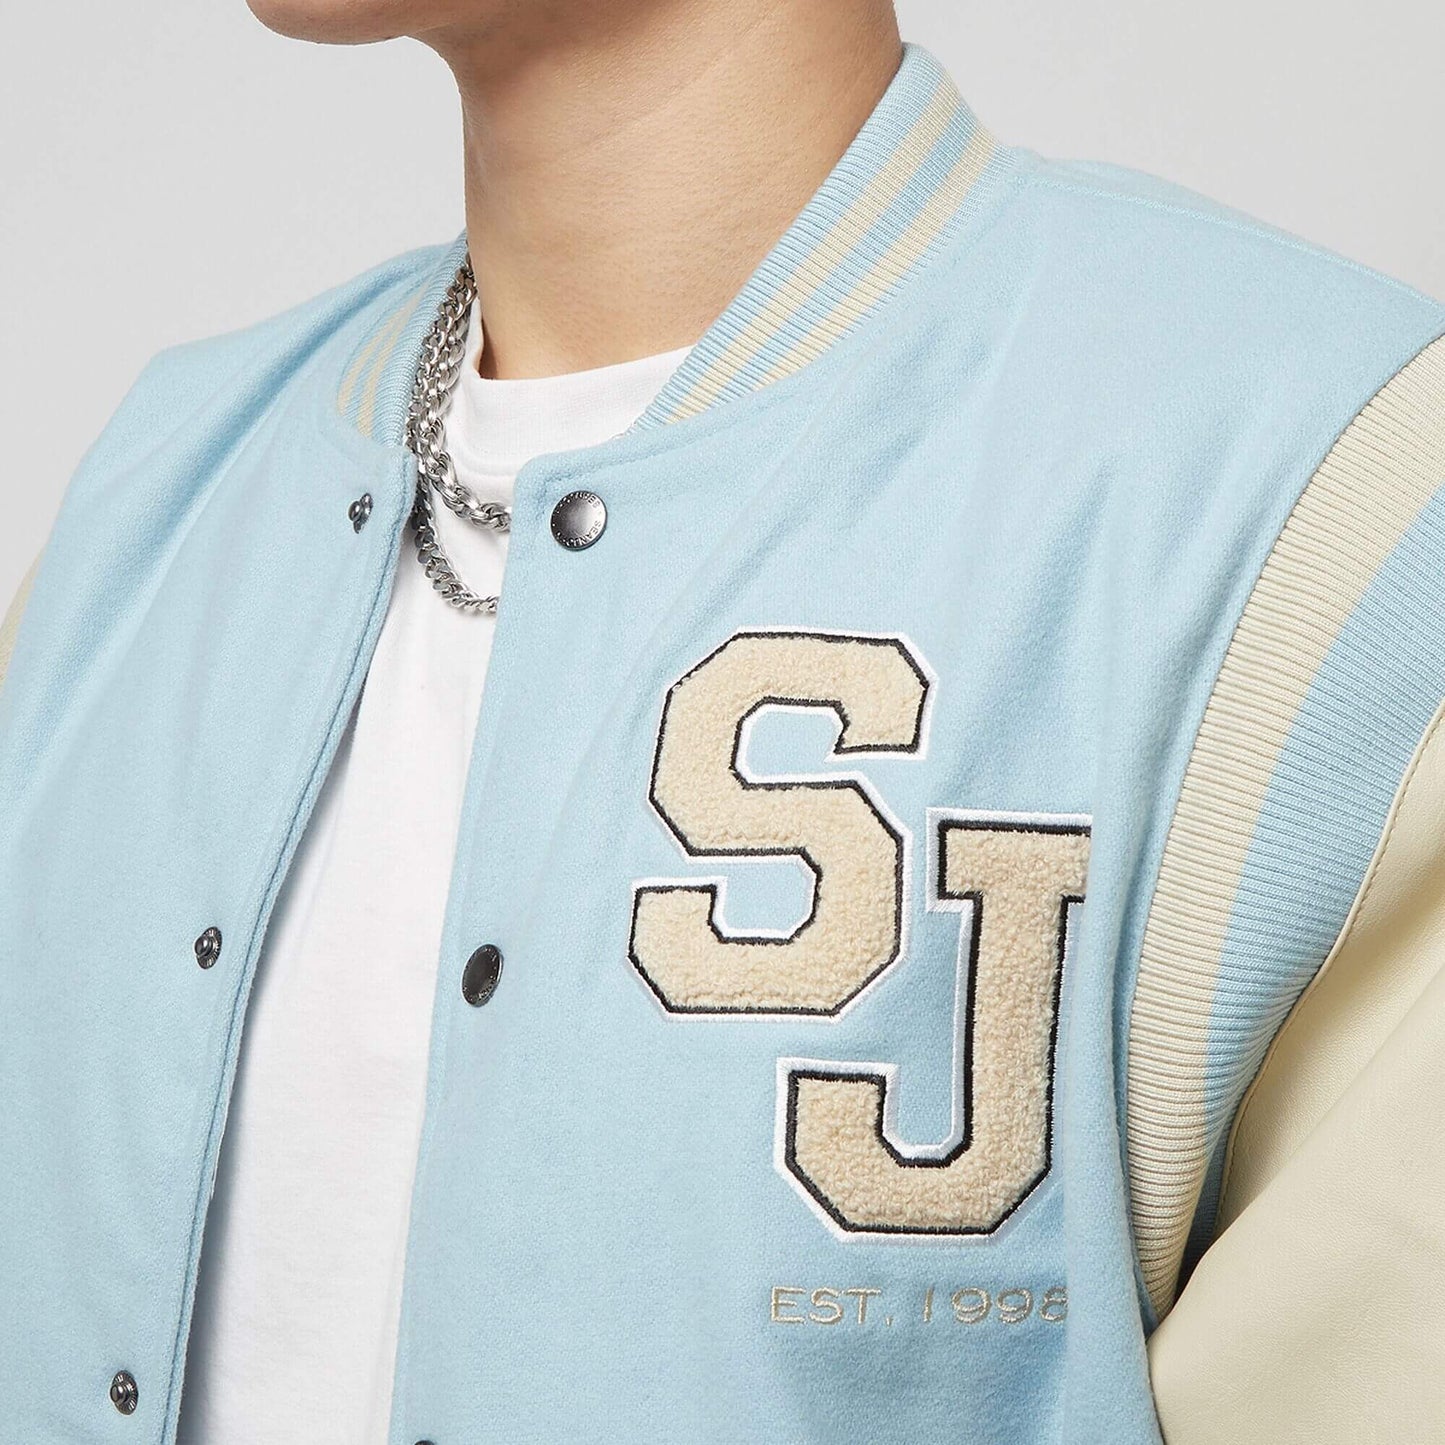 Sean John SJ Script Logo SJ Collegejacket light blue/light sand